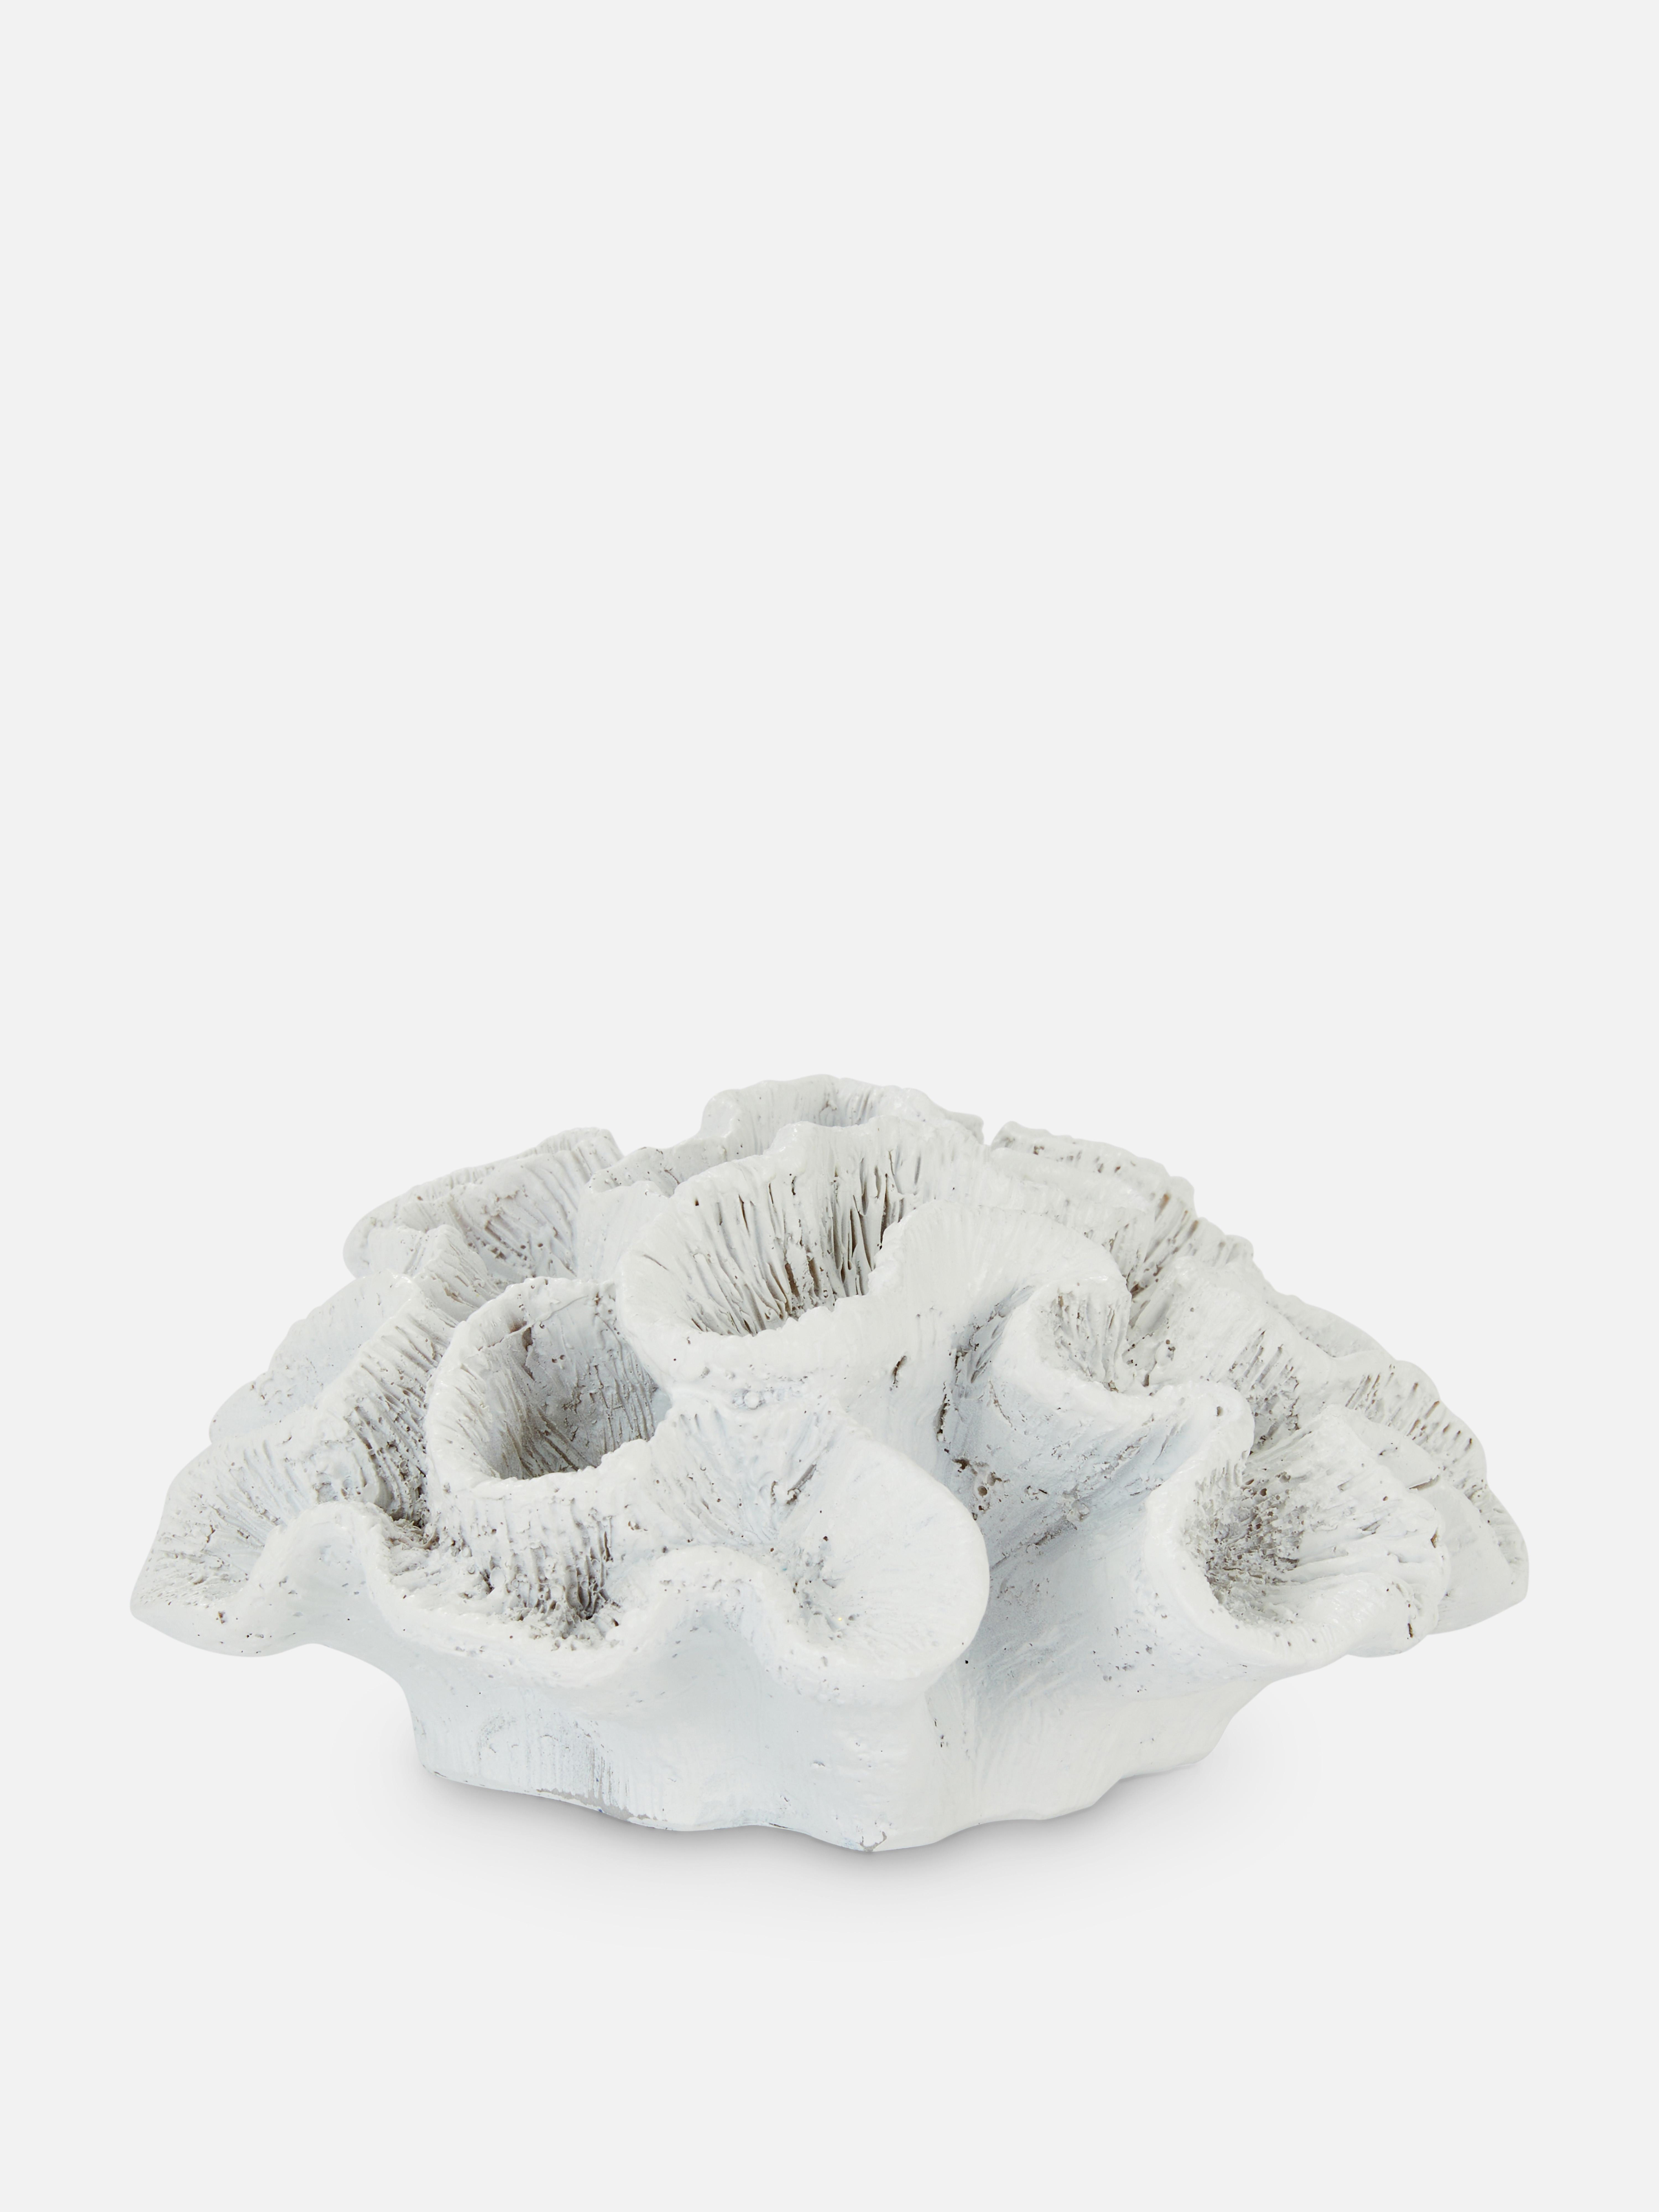 Adorno de cerámica en forma de coral